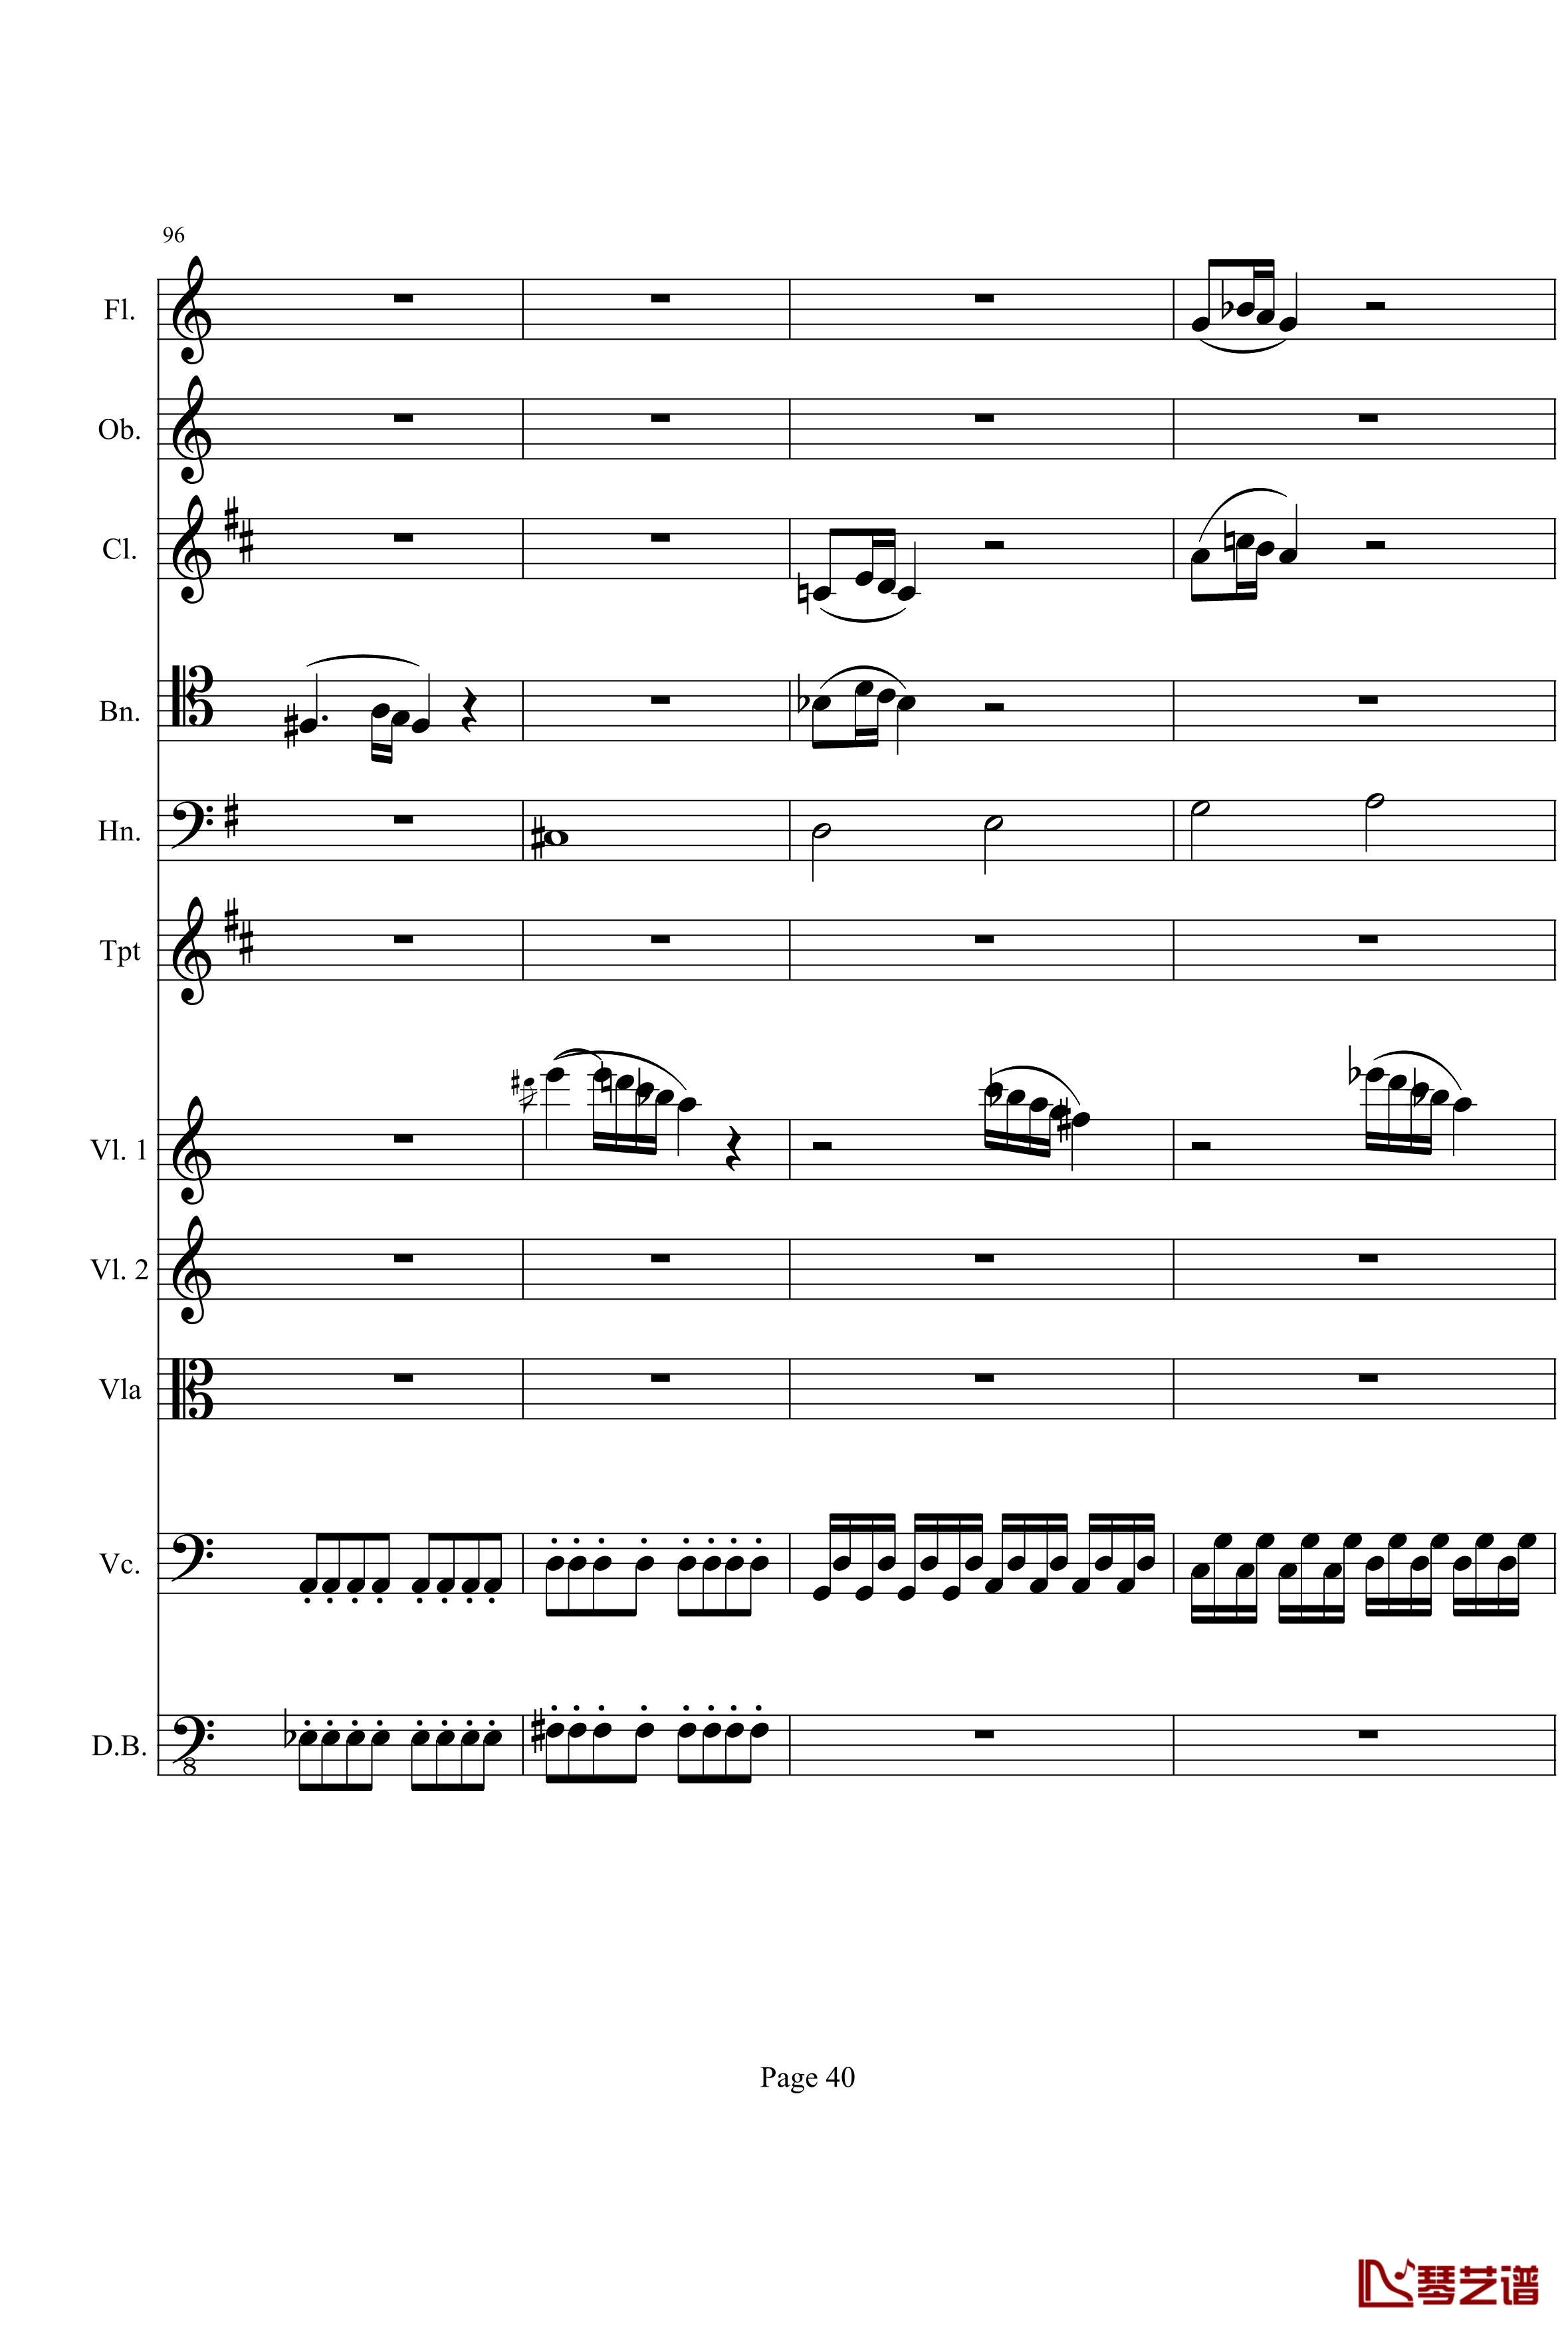 奏鸣曲之交响钢琴谱-第21首-Ⅰ-贝多芬-beethoven40